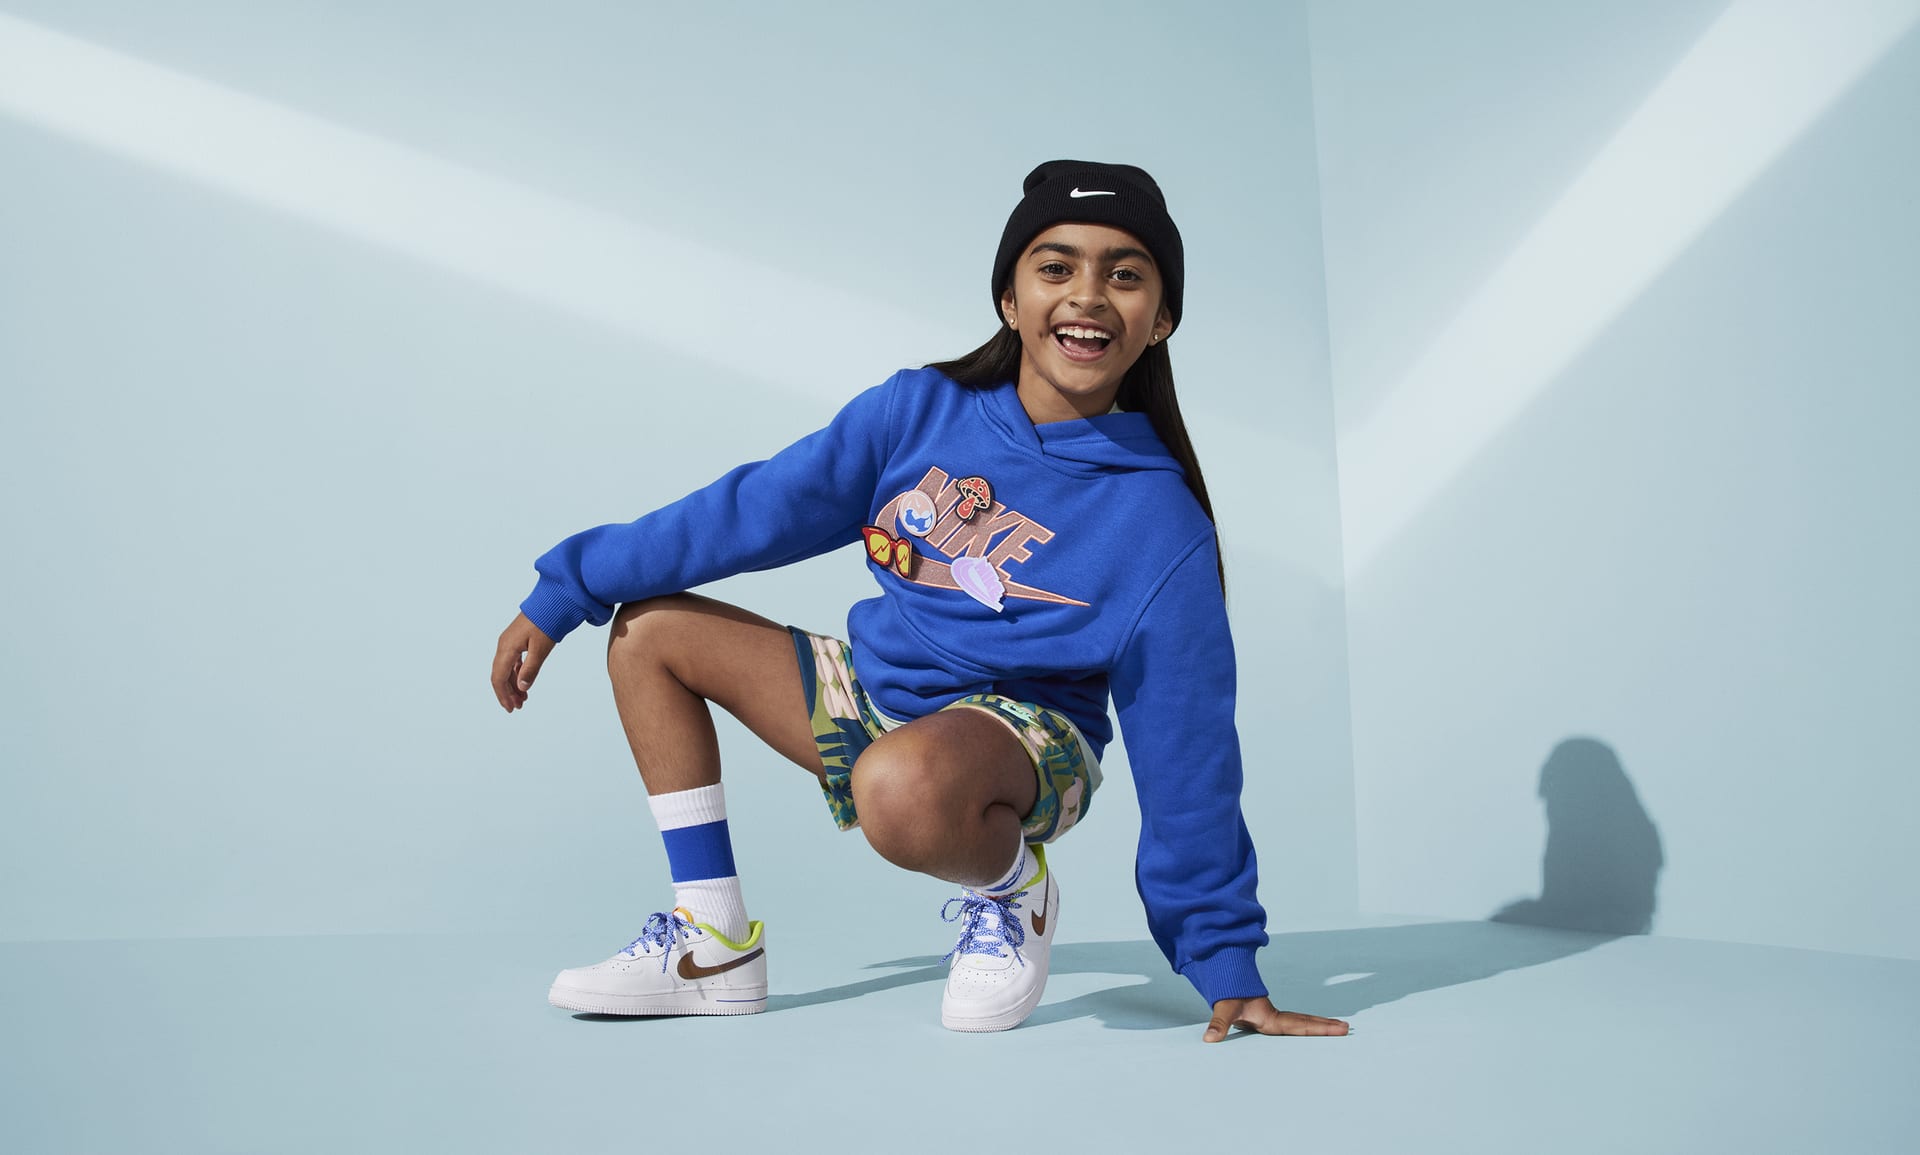 Nike Peak Kids' Swoosh Beanie